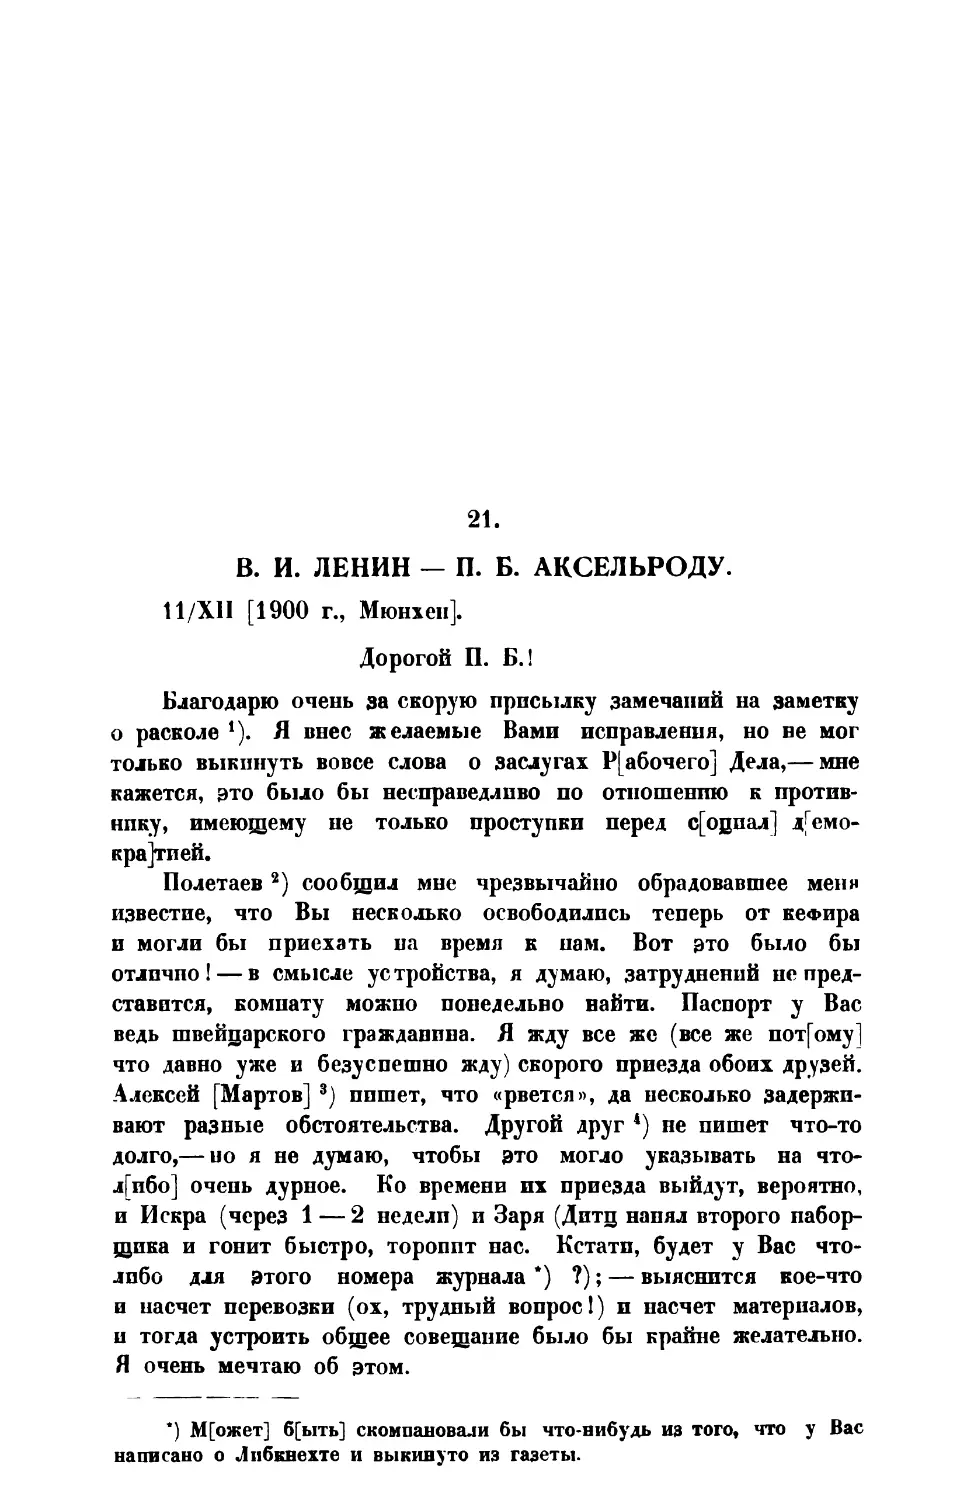 21. В. И. Ленин. — Письмо П. Б. Аксельроду от 11 XII 1900 г.